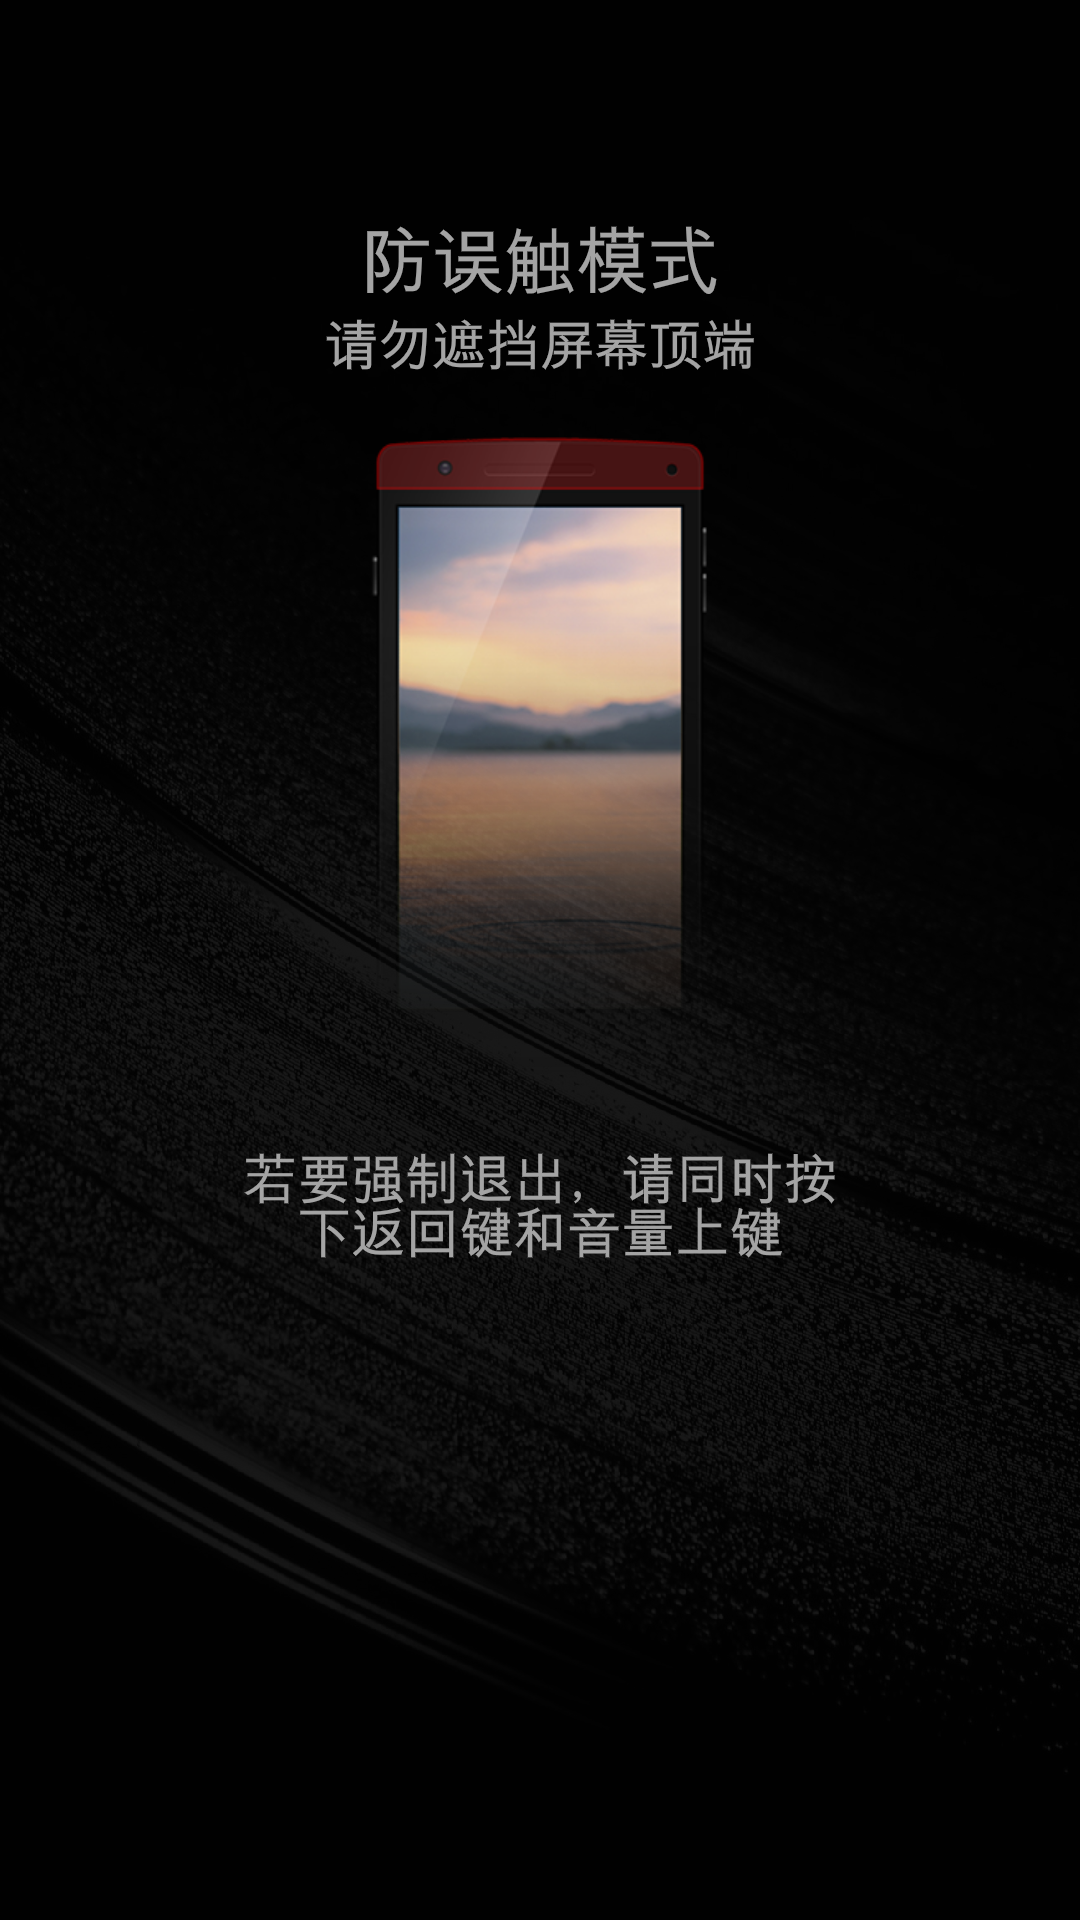 诺基亚N9首创的双击唤醒屏幕技术需要硬件支